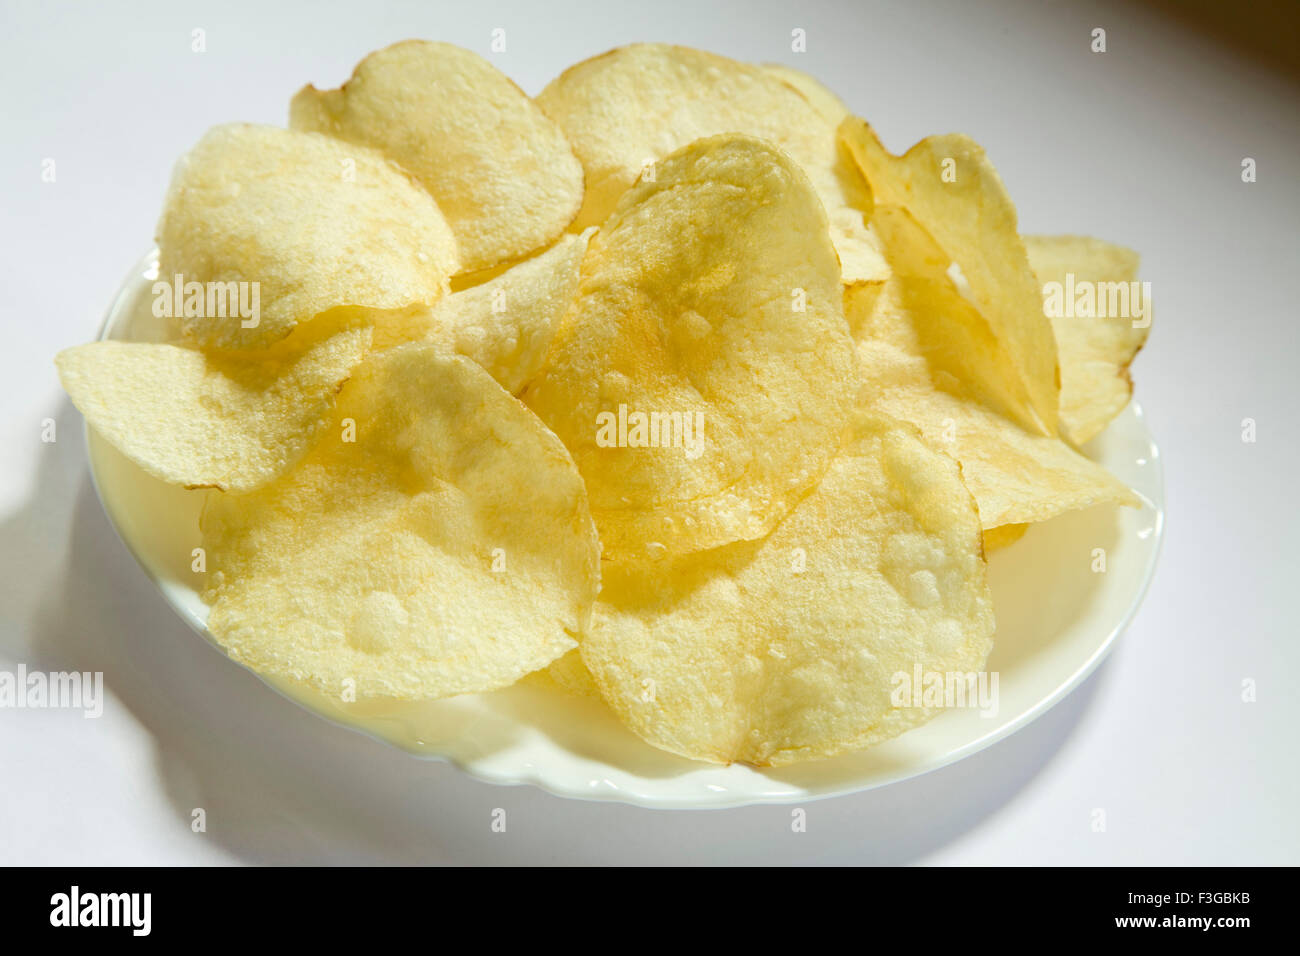 Junk food snack salato patatine o fetta servita nella piastra Foto Stock